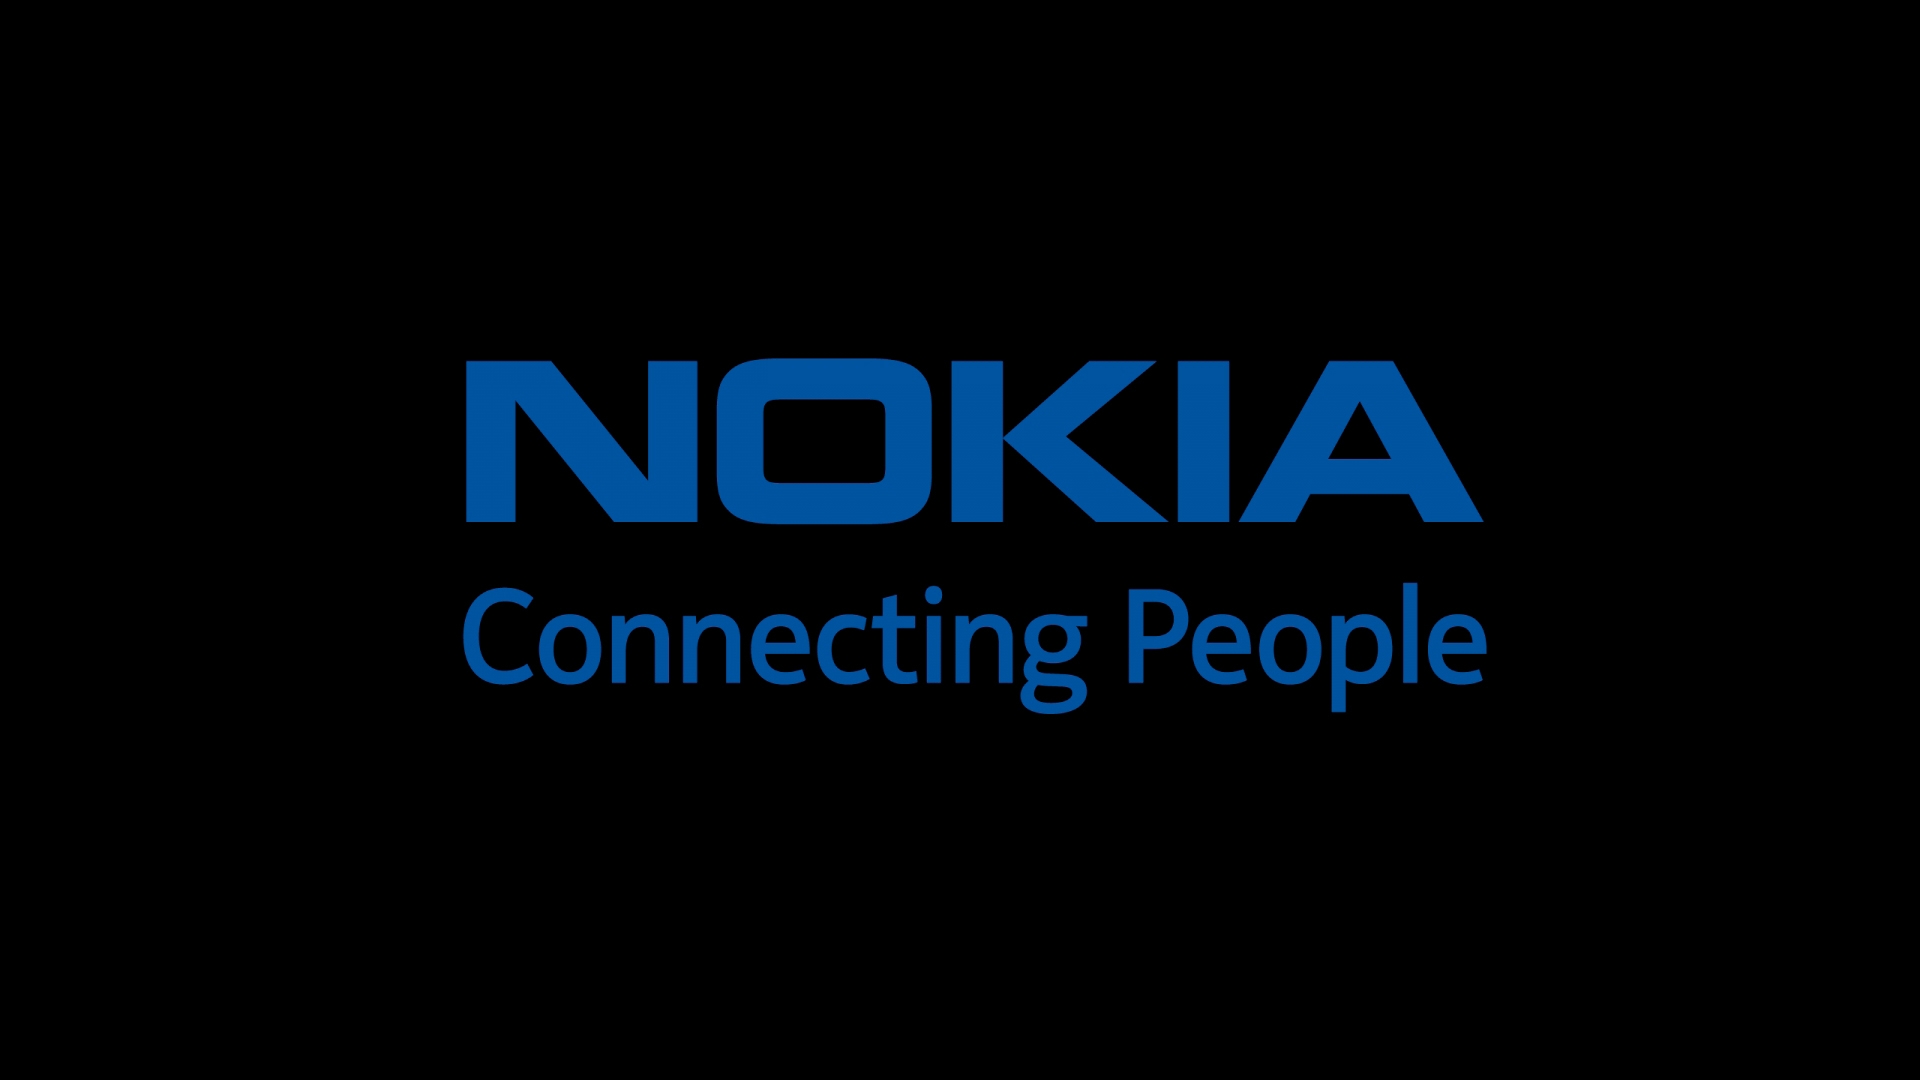 Bộ sưu tập hình nền Nokia ấn tượng và độc đáo sẽ giúp bạn tạo nên phong cách riêng cho chiếc điện thoại Nokia của mình. Từ những hình ảnh nền hiện đại, thời trang, đến những bức hình đơn giản, truyền thống, chắc chắn sẽ làm bạn hài lòng và cảm thấy thú vị khi sử dụng điện thoại Nokia.